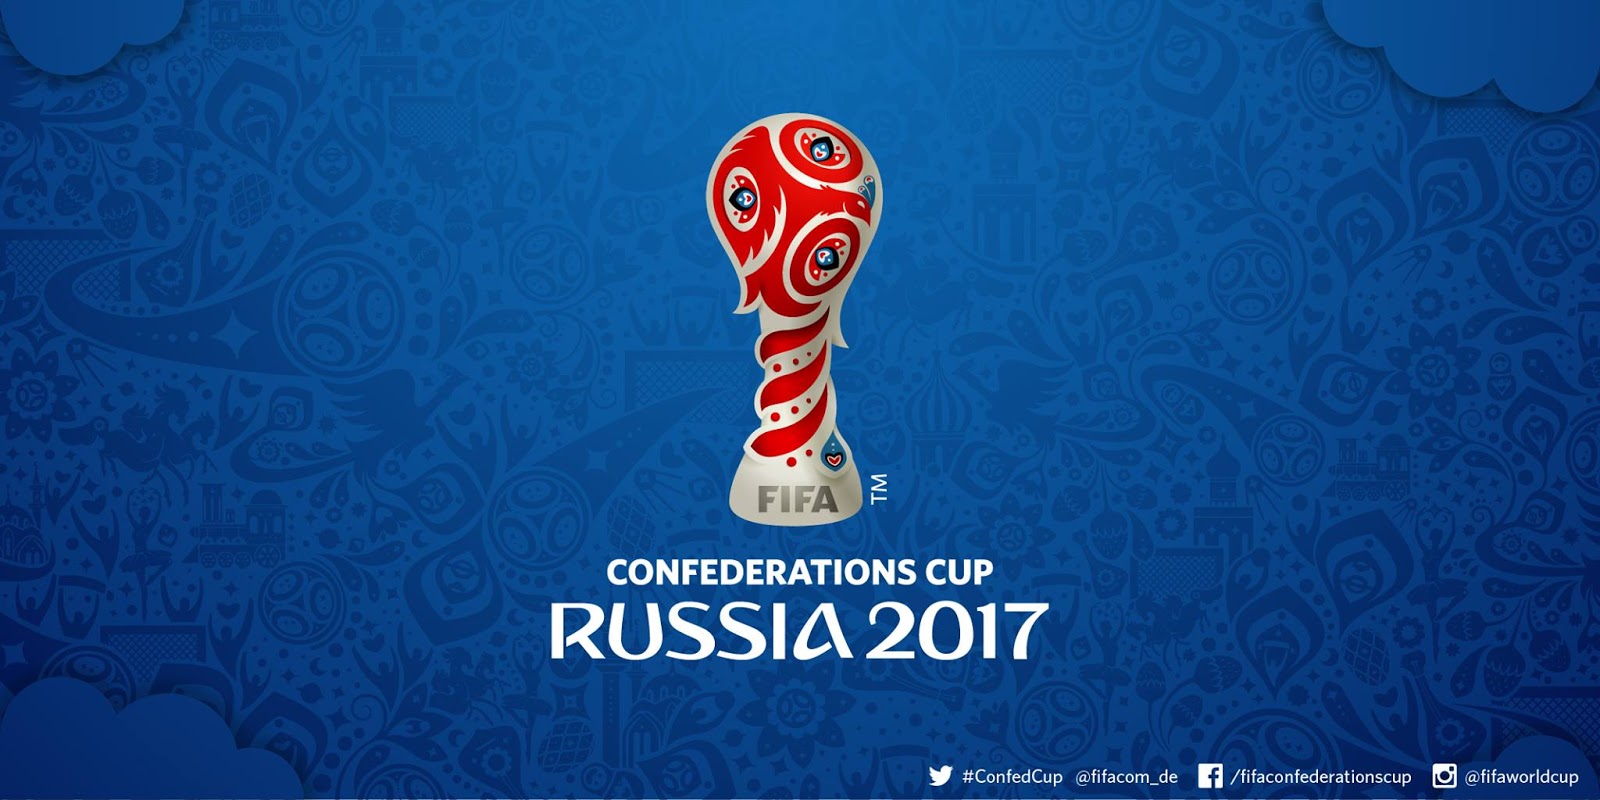 Le logo de la Coupe des Confédérations 2017 en Russie